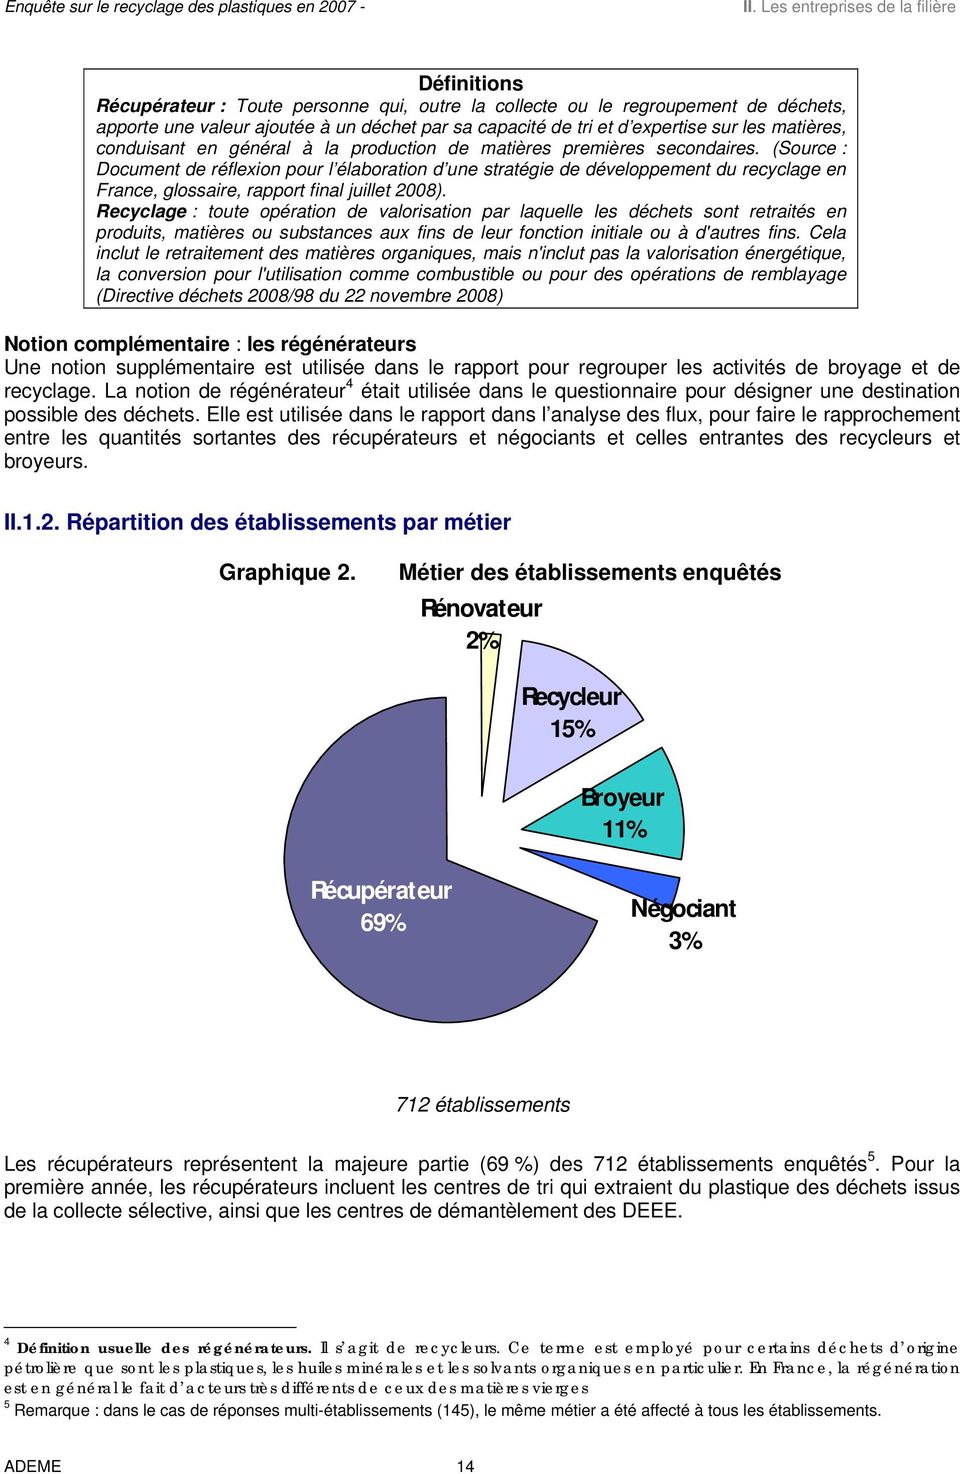 (Source : Document de réflexion pour l élaboration d une stratégie de développement du recyclage en France, glossaire, rapport final juillet 2008).